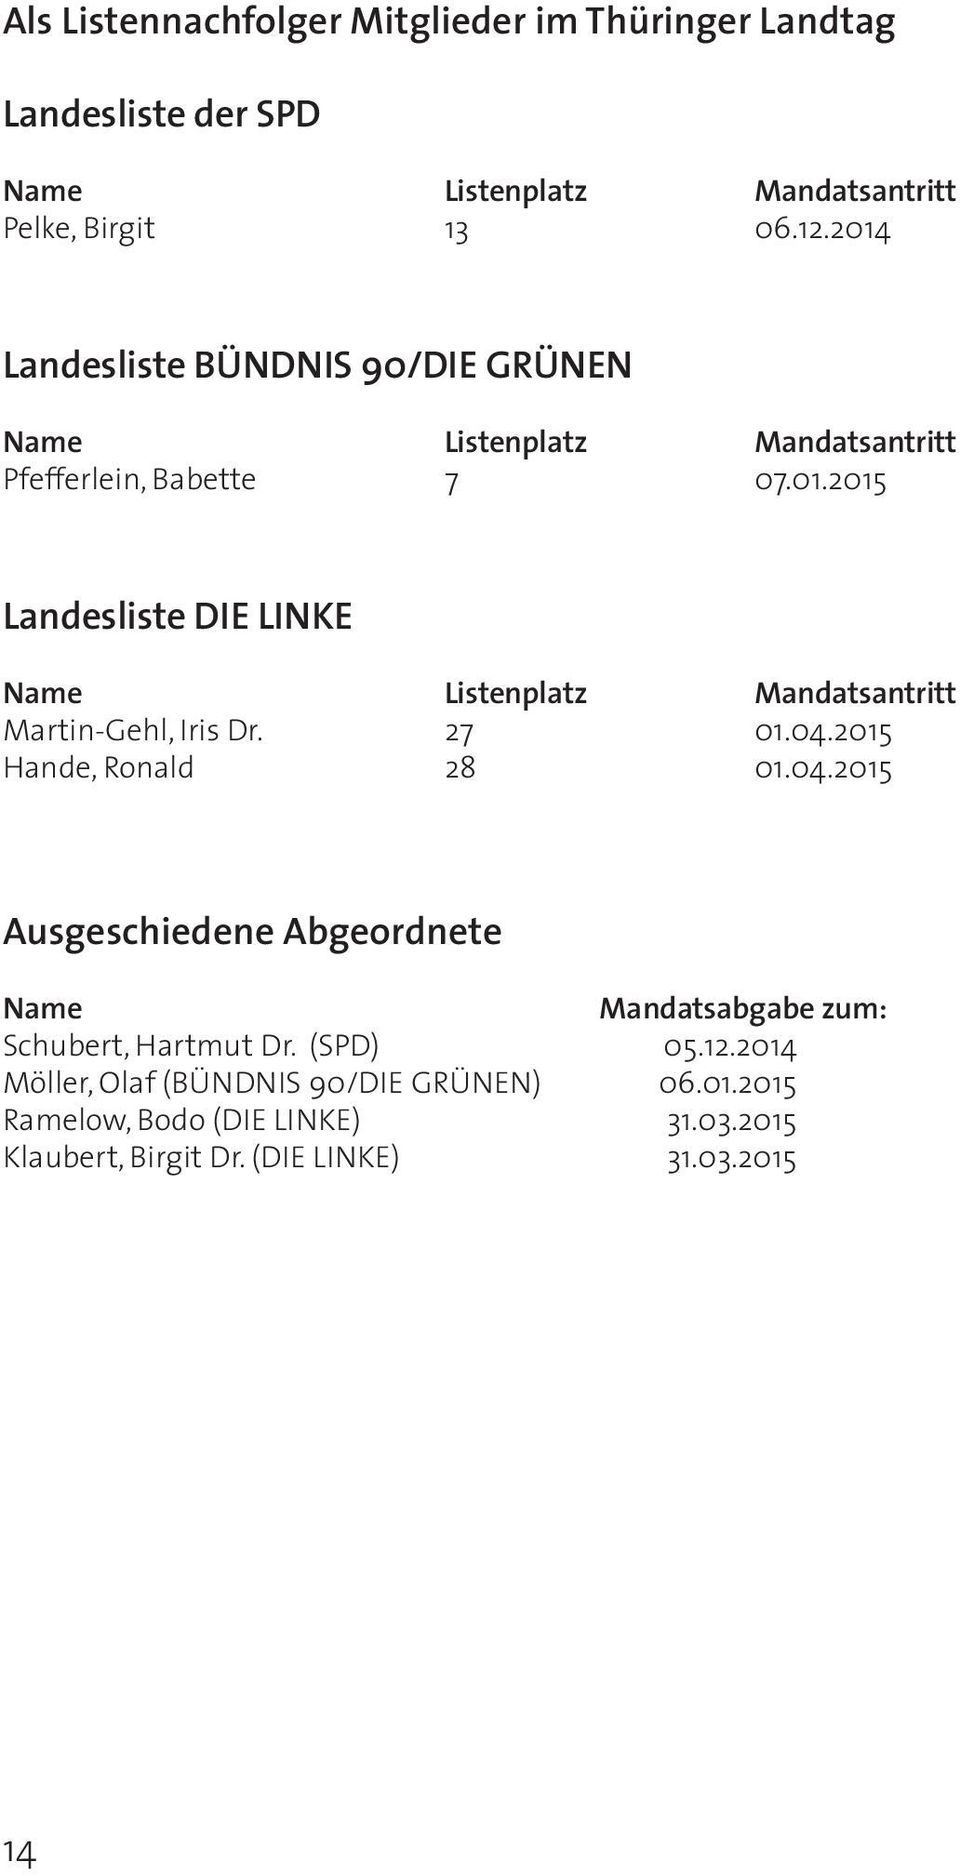 27 01.04.2015 Hande, Ronald 28 01.04.2015 Ausgeschiedene Abgeordnete Name Mandatsabgabe zum: Schubert, Hartmut Dr. (SPD) 05.12.